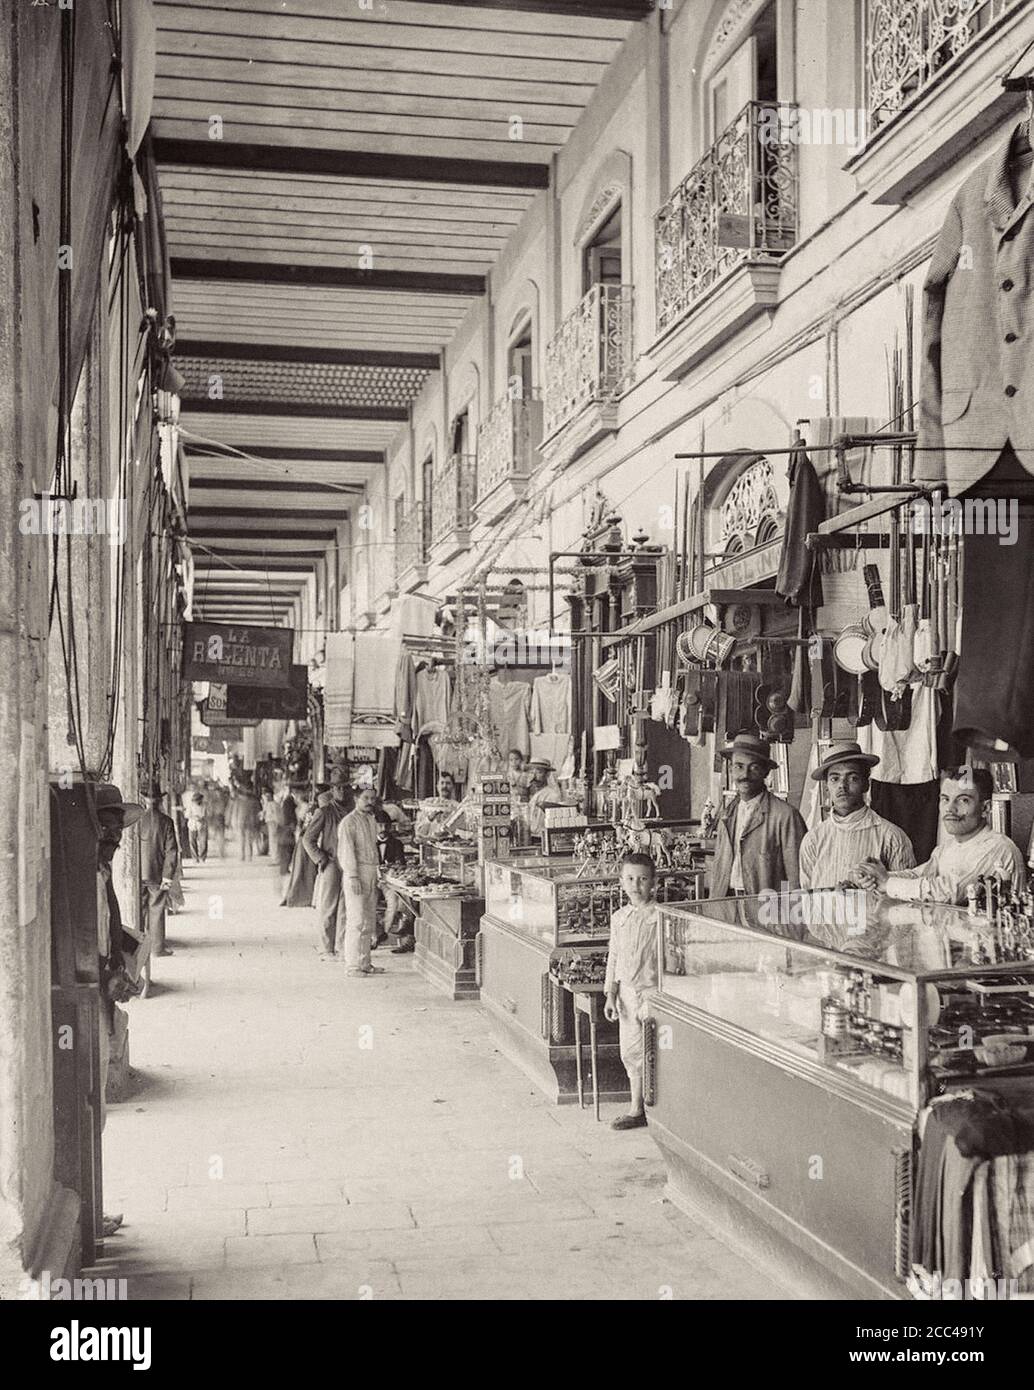 La vieille Havane. Étals de vendeurs dans le Mercado Tocon. Cuba. 1904 Banque D'Images